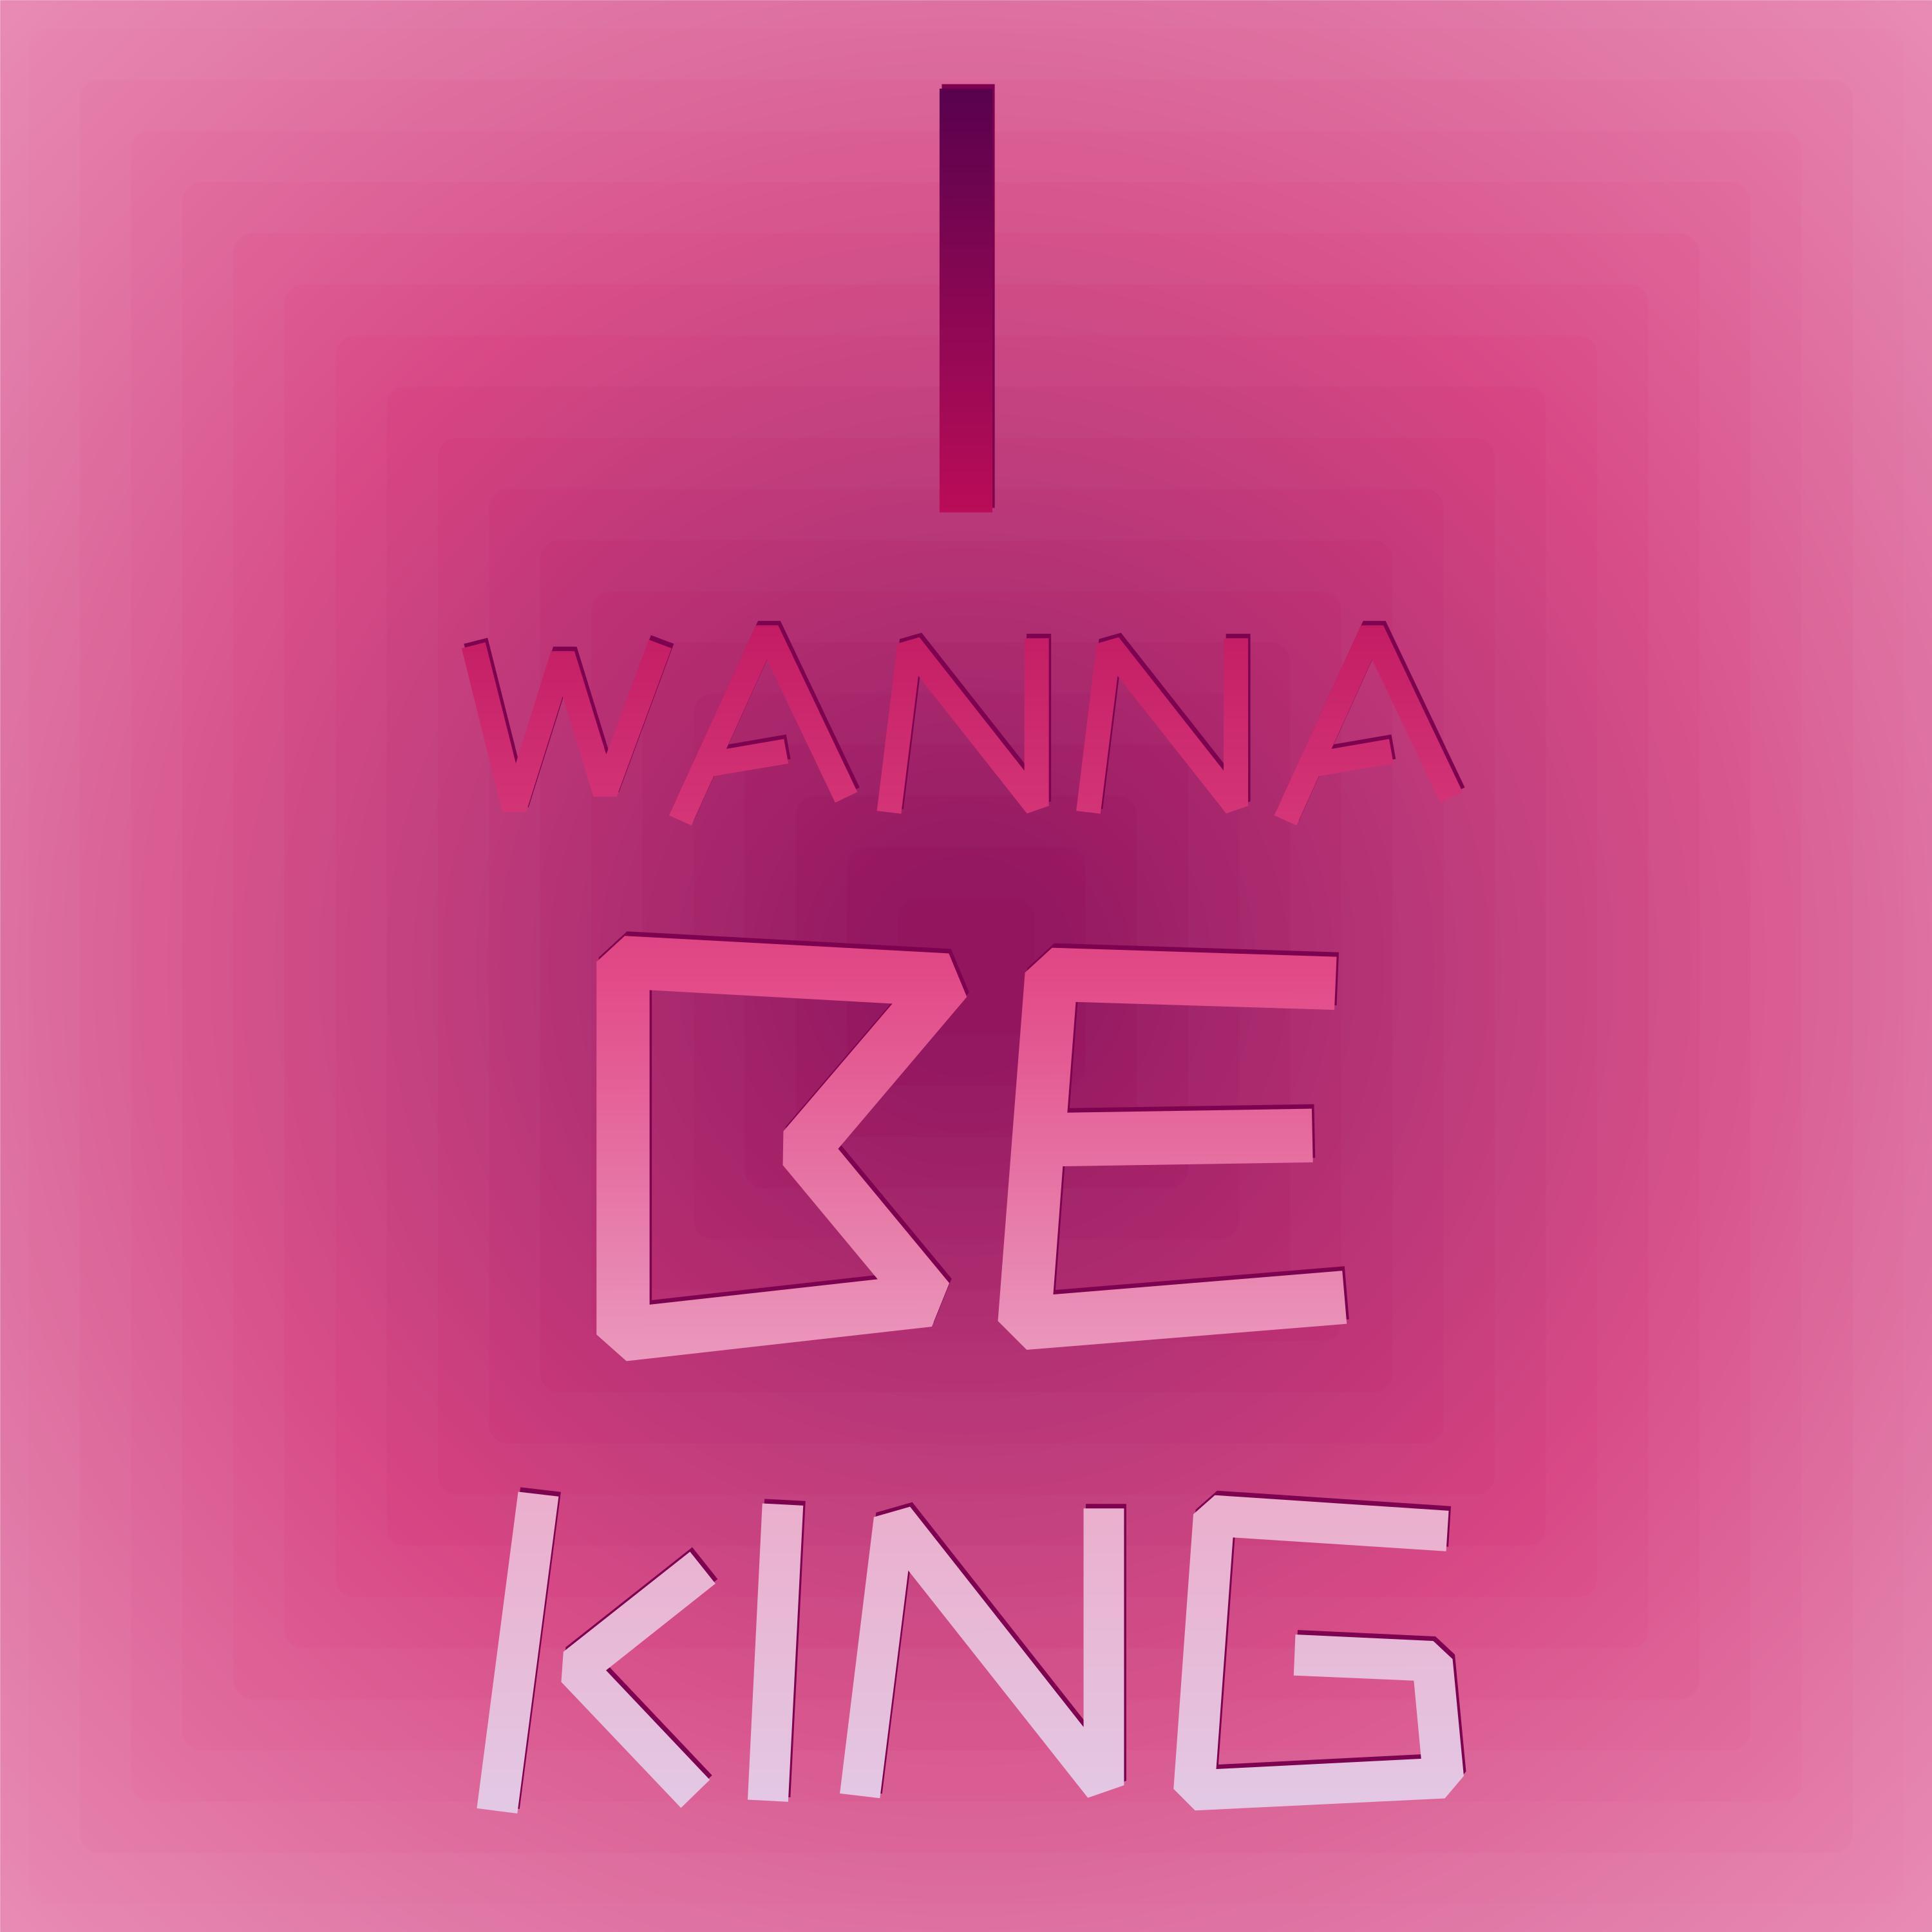 anitav alyalu - I Wanna be king